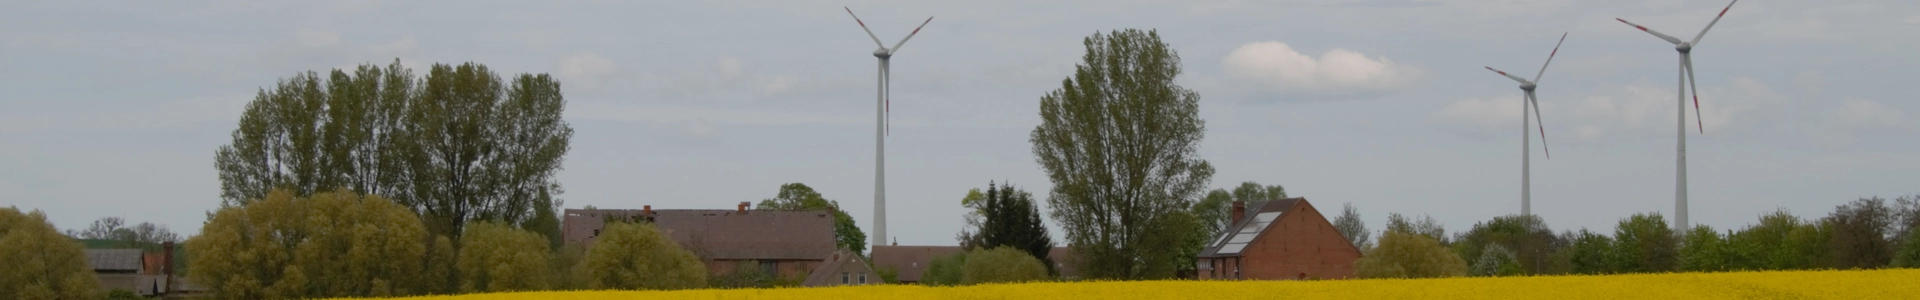 Solar- und Windenergie im Einklang